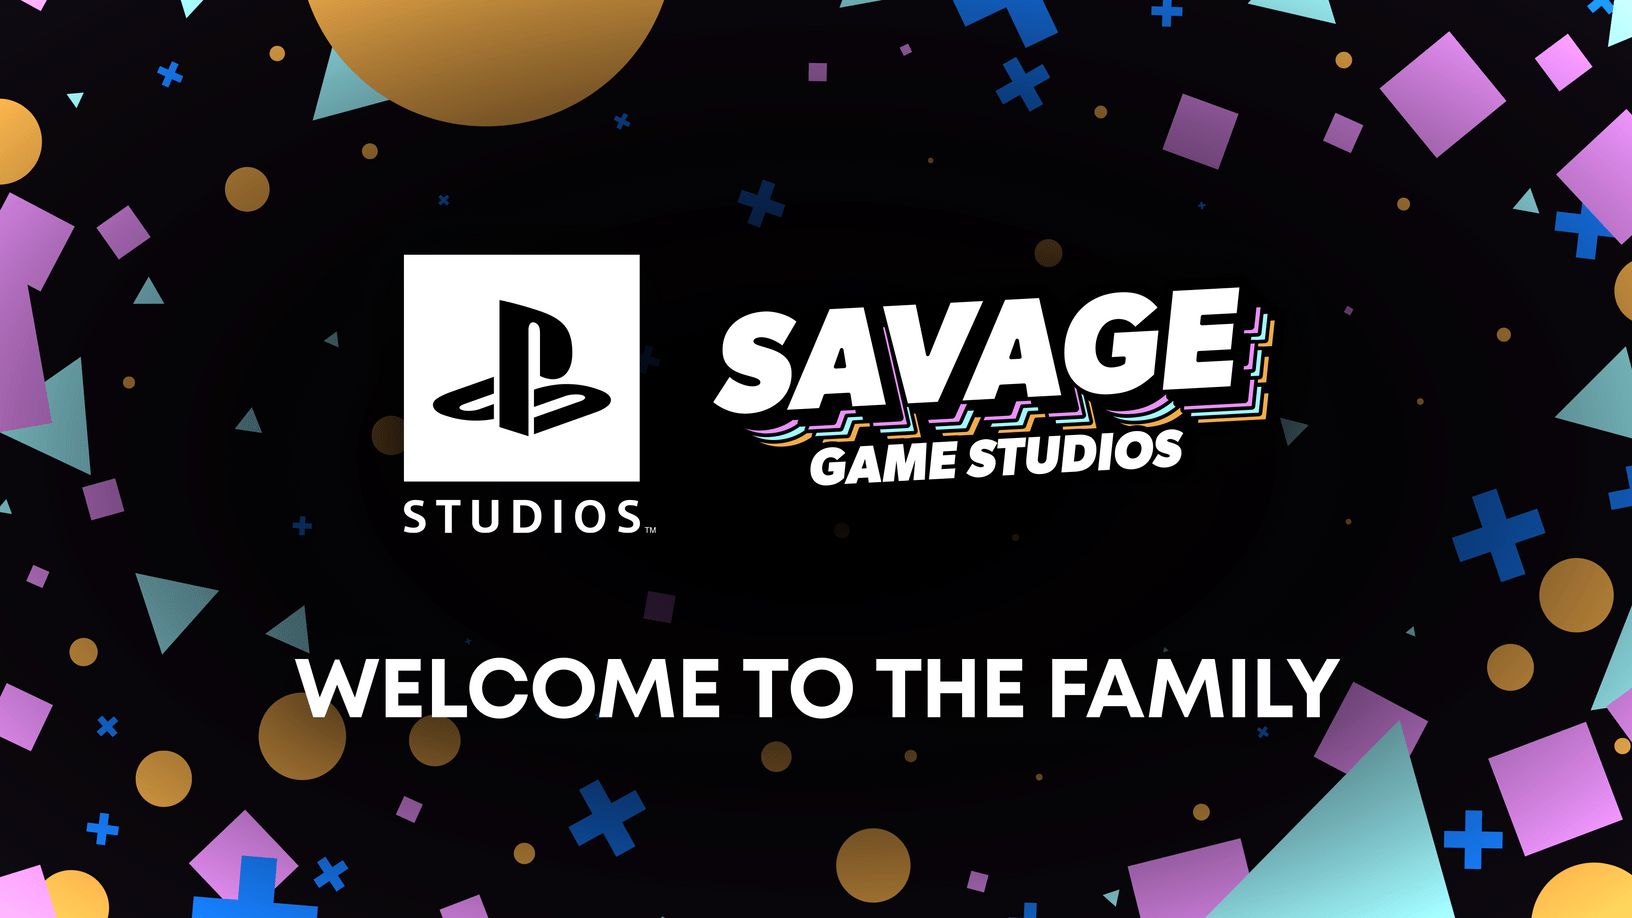 Sony kupiło Savage Game Studios (źródło: PlayStation Blog)